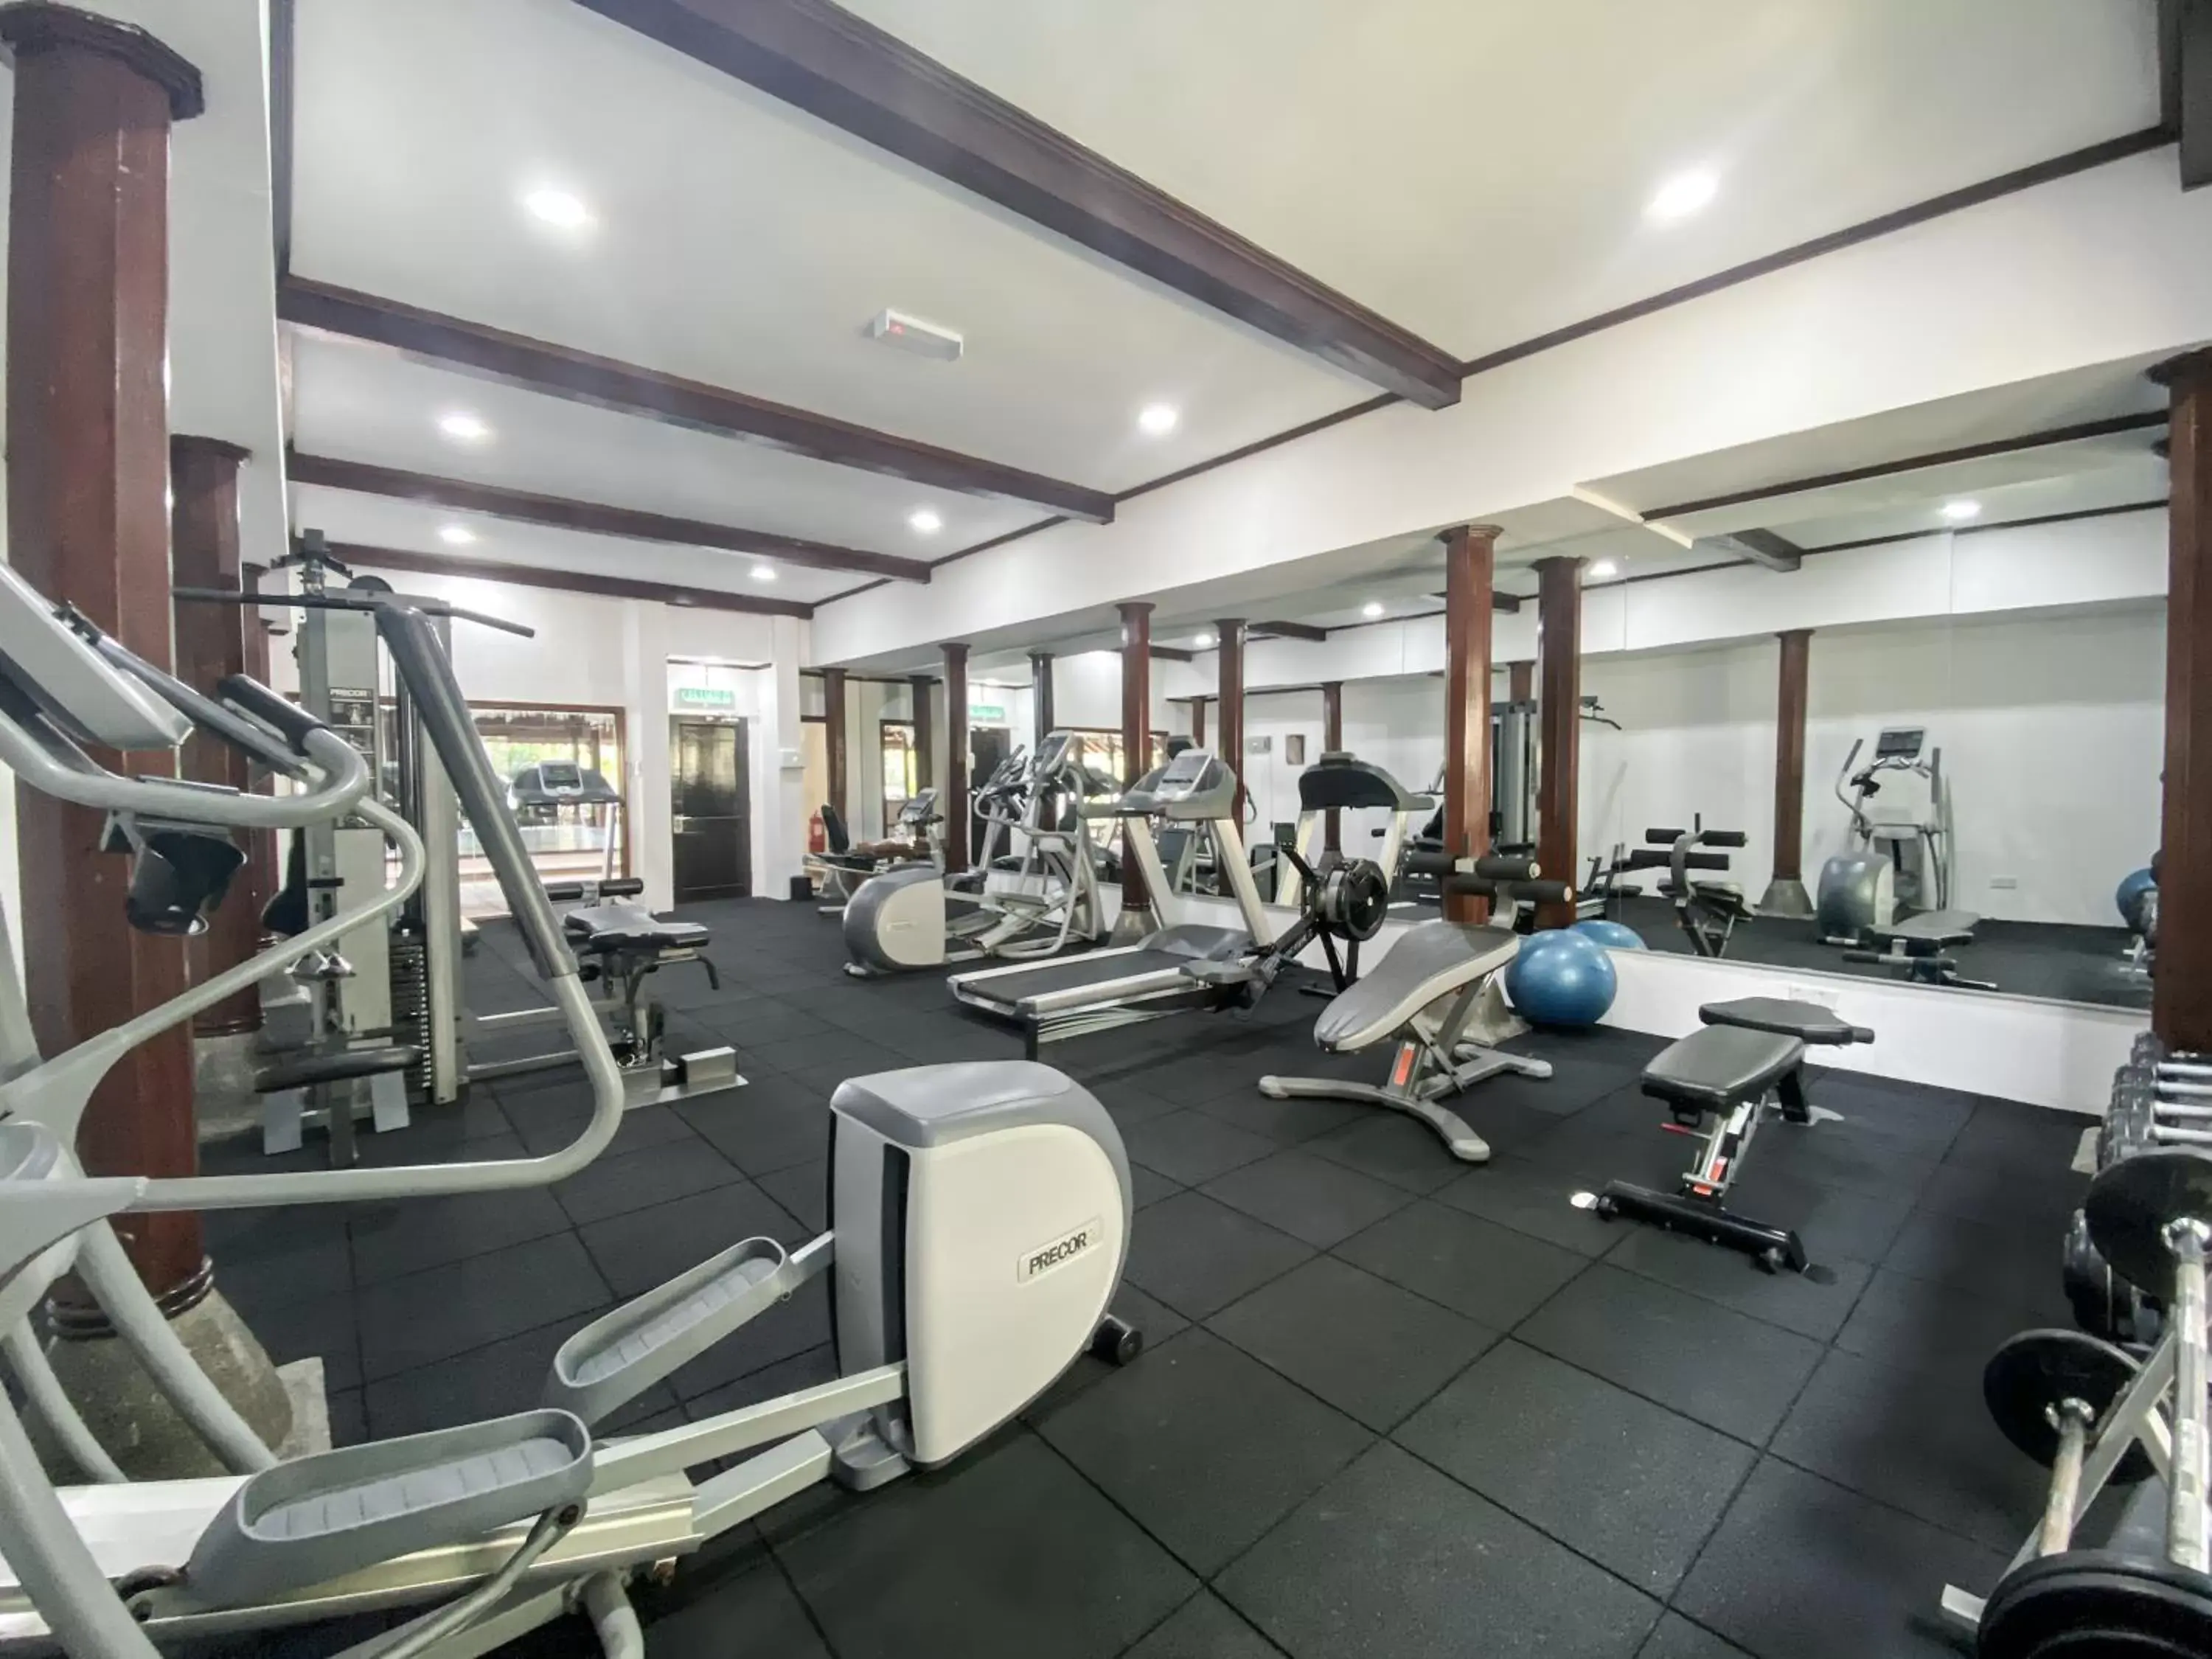 Fitness centre/facilities, Fitness Center/Facilities in Rebak Island Resort & Marina, Langkawi